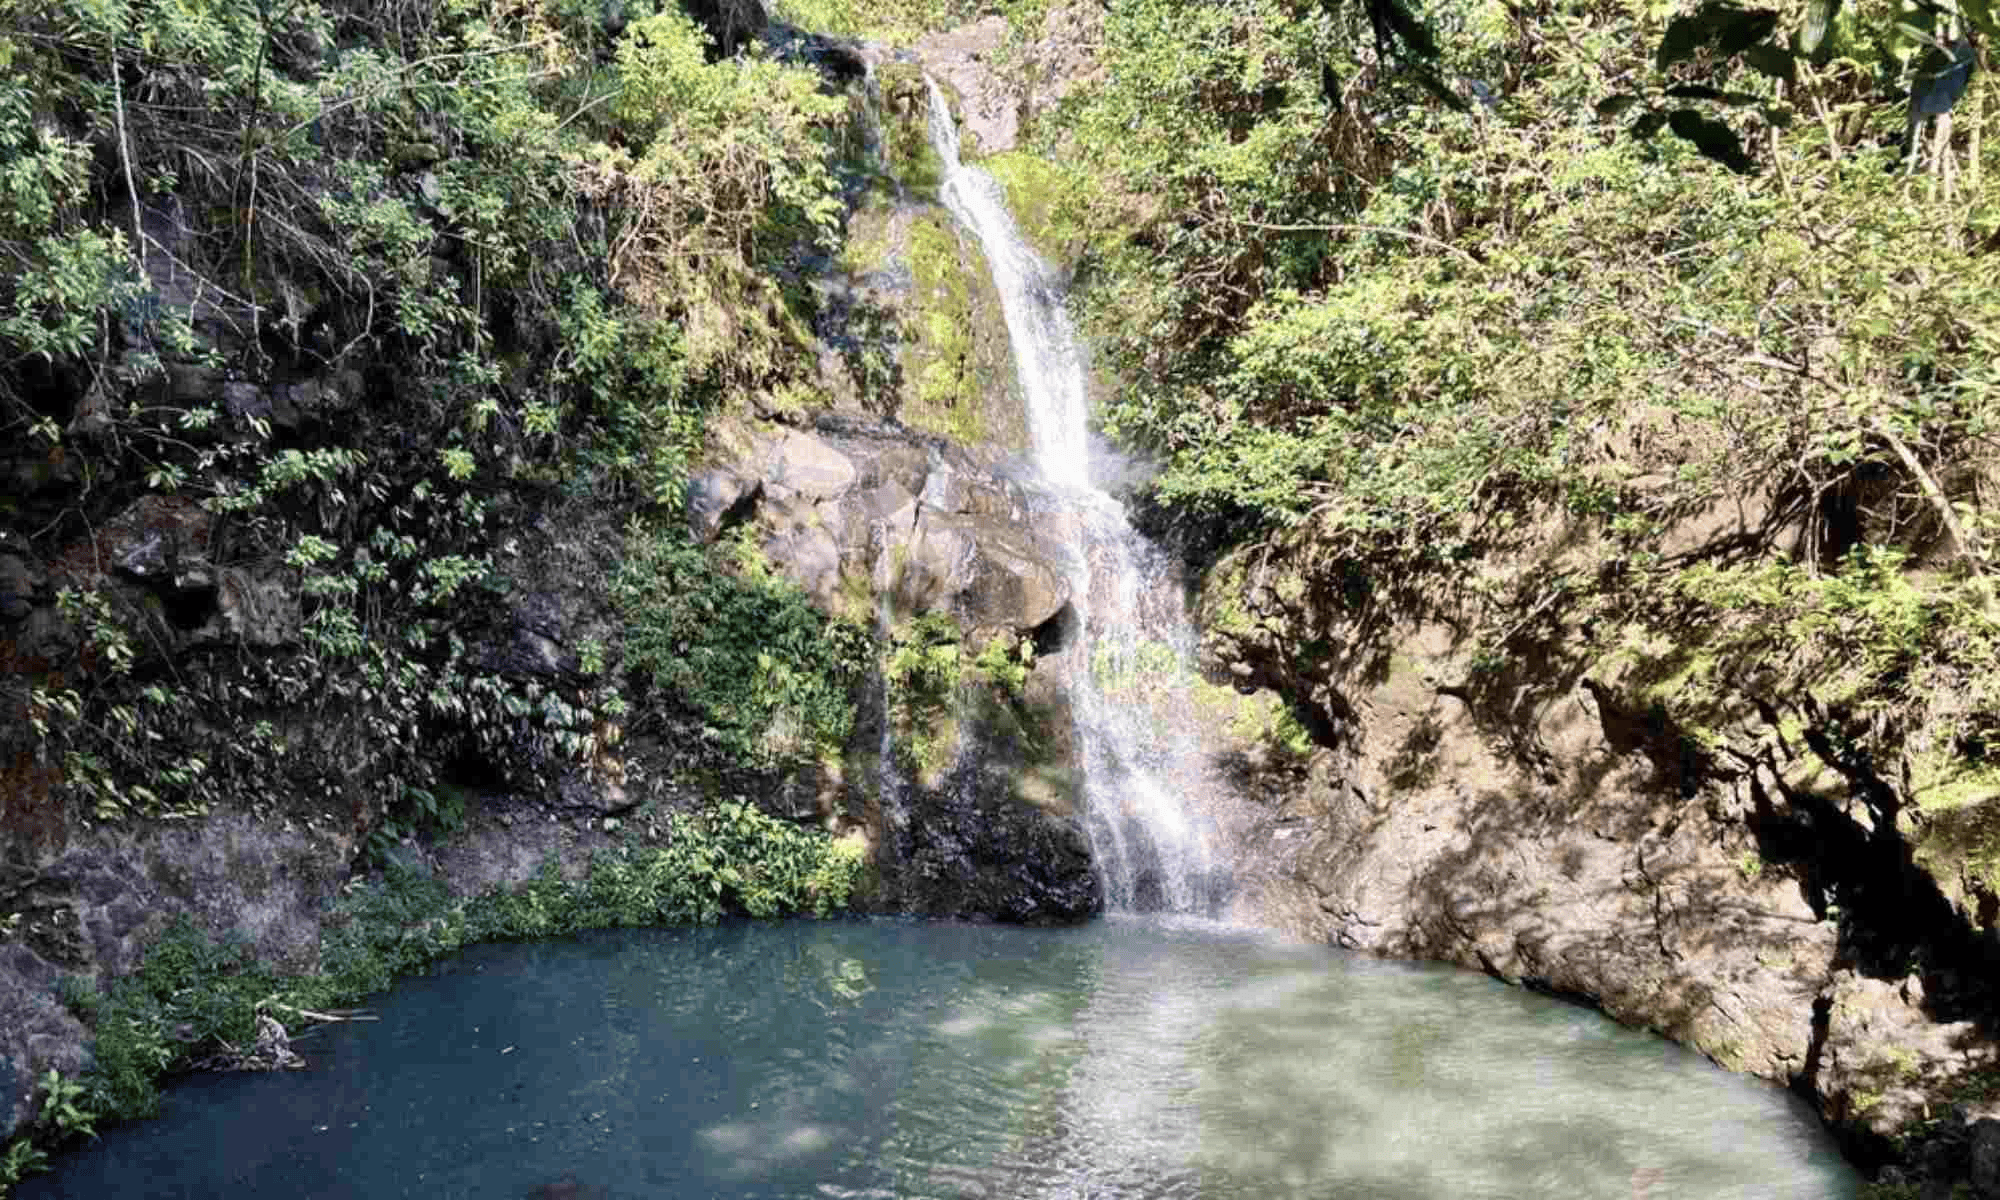 Waimano Falls in Oahu